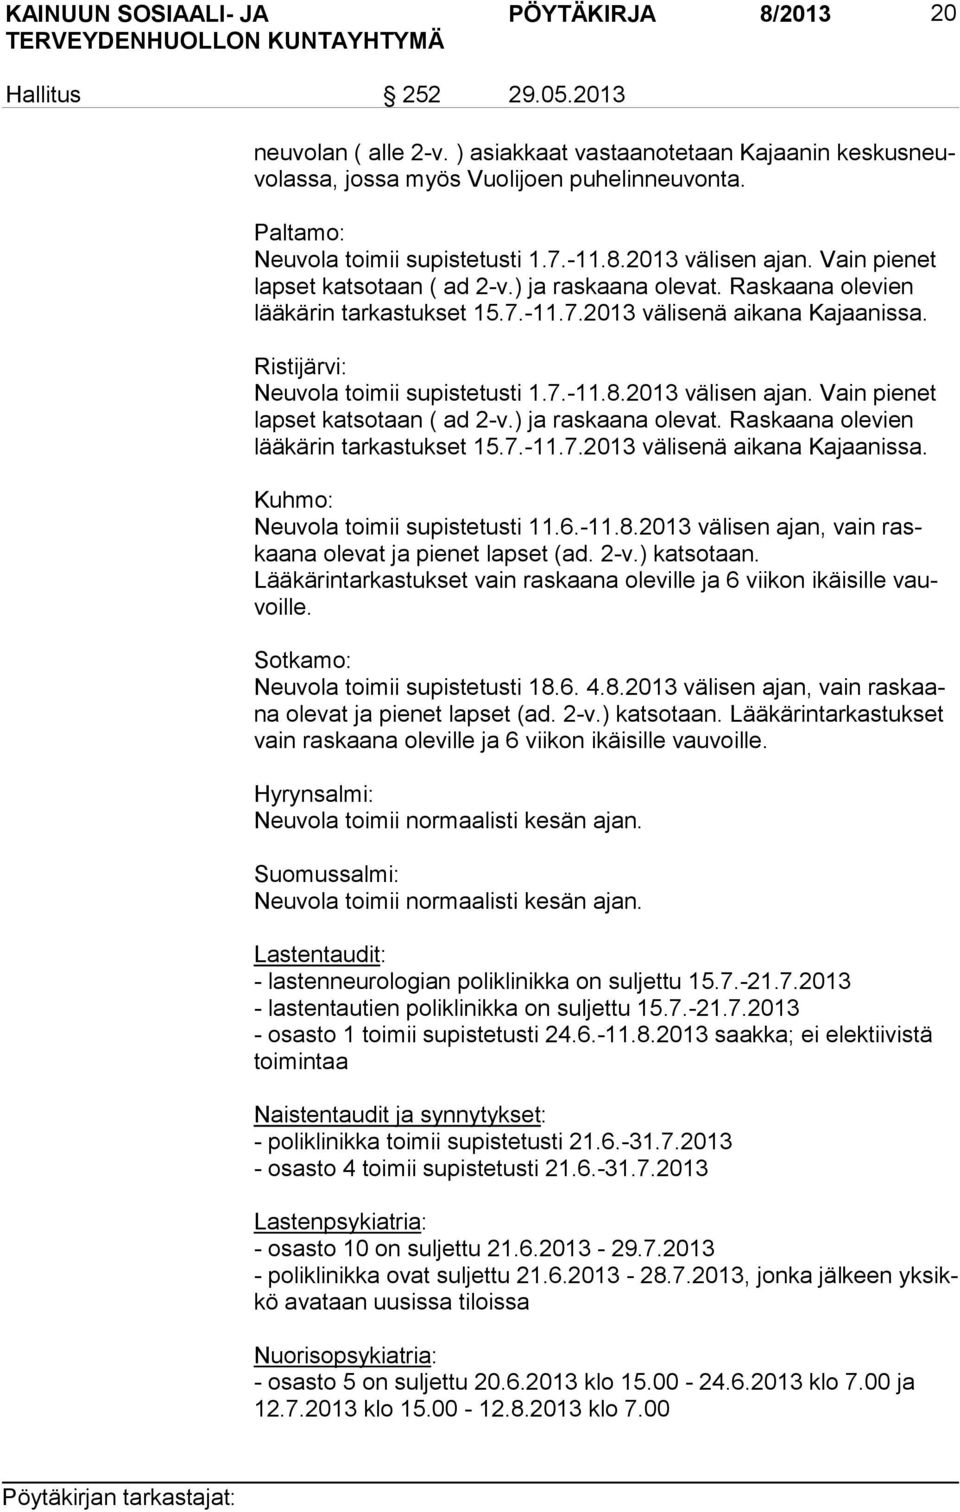 Ristijärvi: Neuvola toimii supistetusti 1.7.-11.8.2013 välisen ajan. Vain pienet lap set katsotaan ( ad 2-v.) ja raskaana olevat. Raskaana olevien lää kä rin tarkastukset 15.7.-11.7.2013 välisenä aikana Kajaanissa.